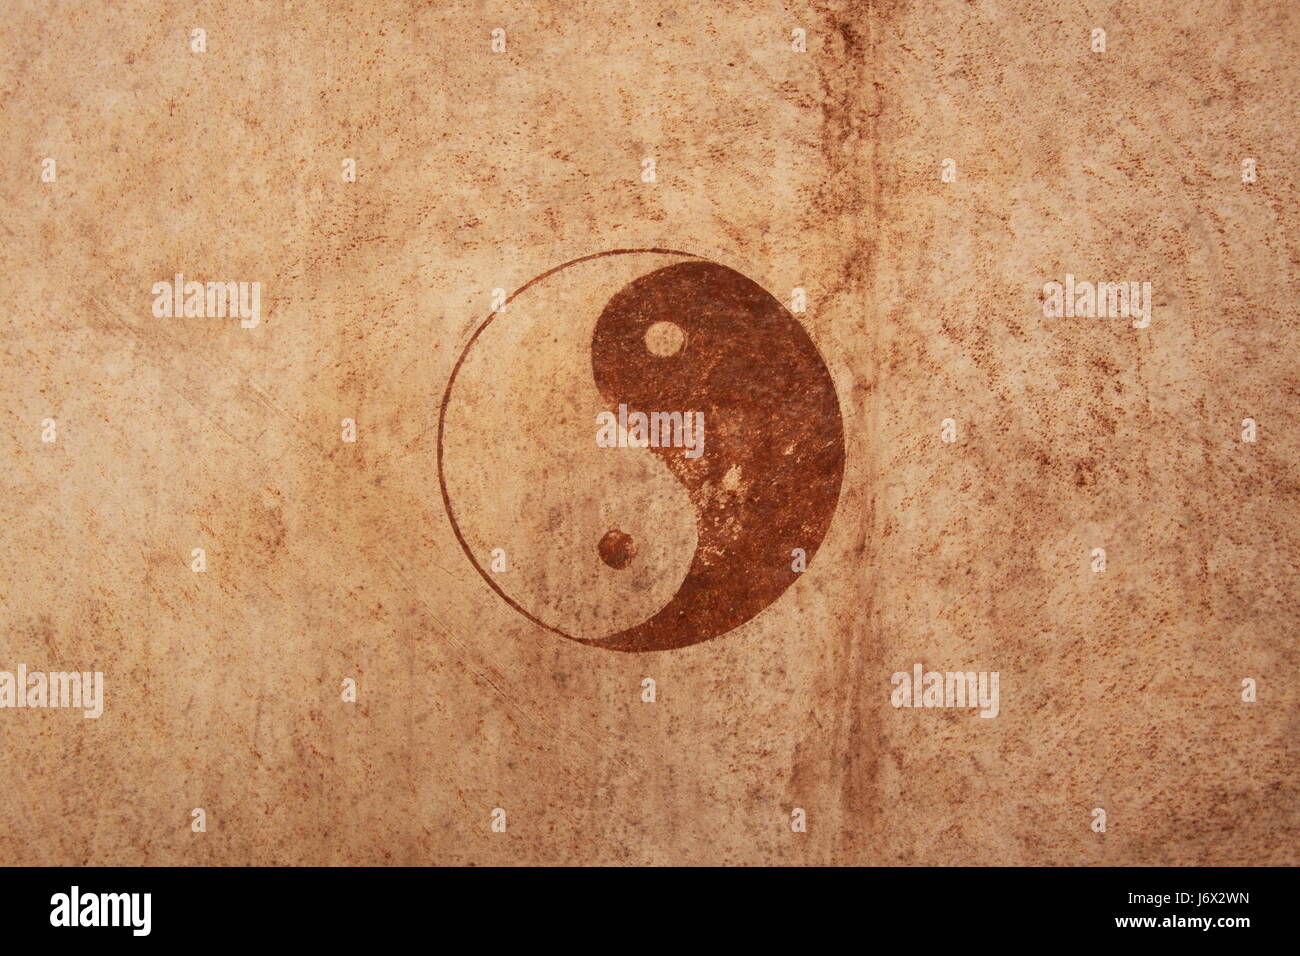 ying yang sing Stock Photo